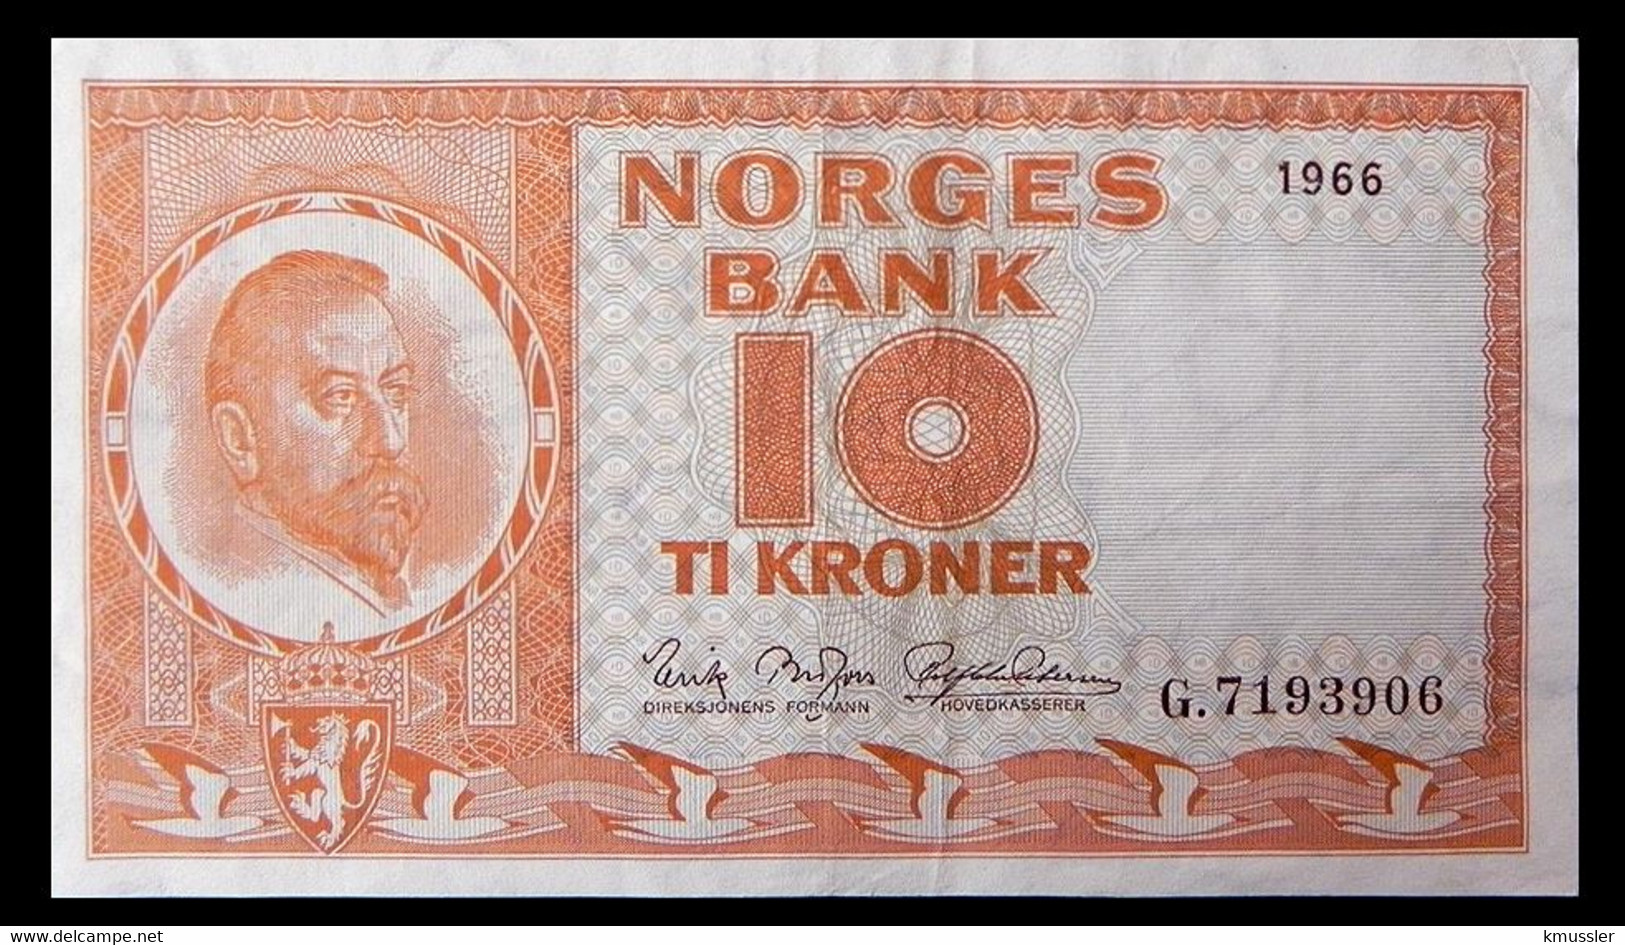 # # # Banknote Norwegen (Norway) 10 Kroner 1966 # # # - Norvège